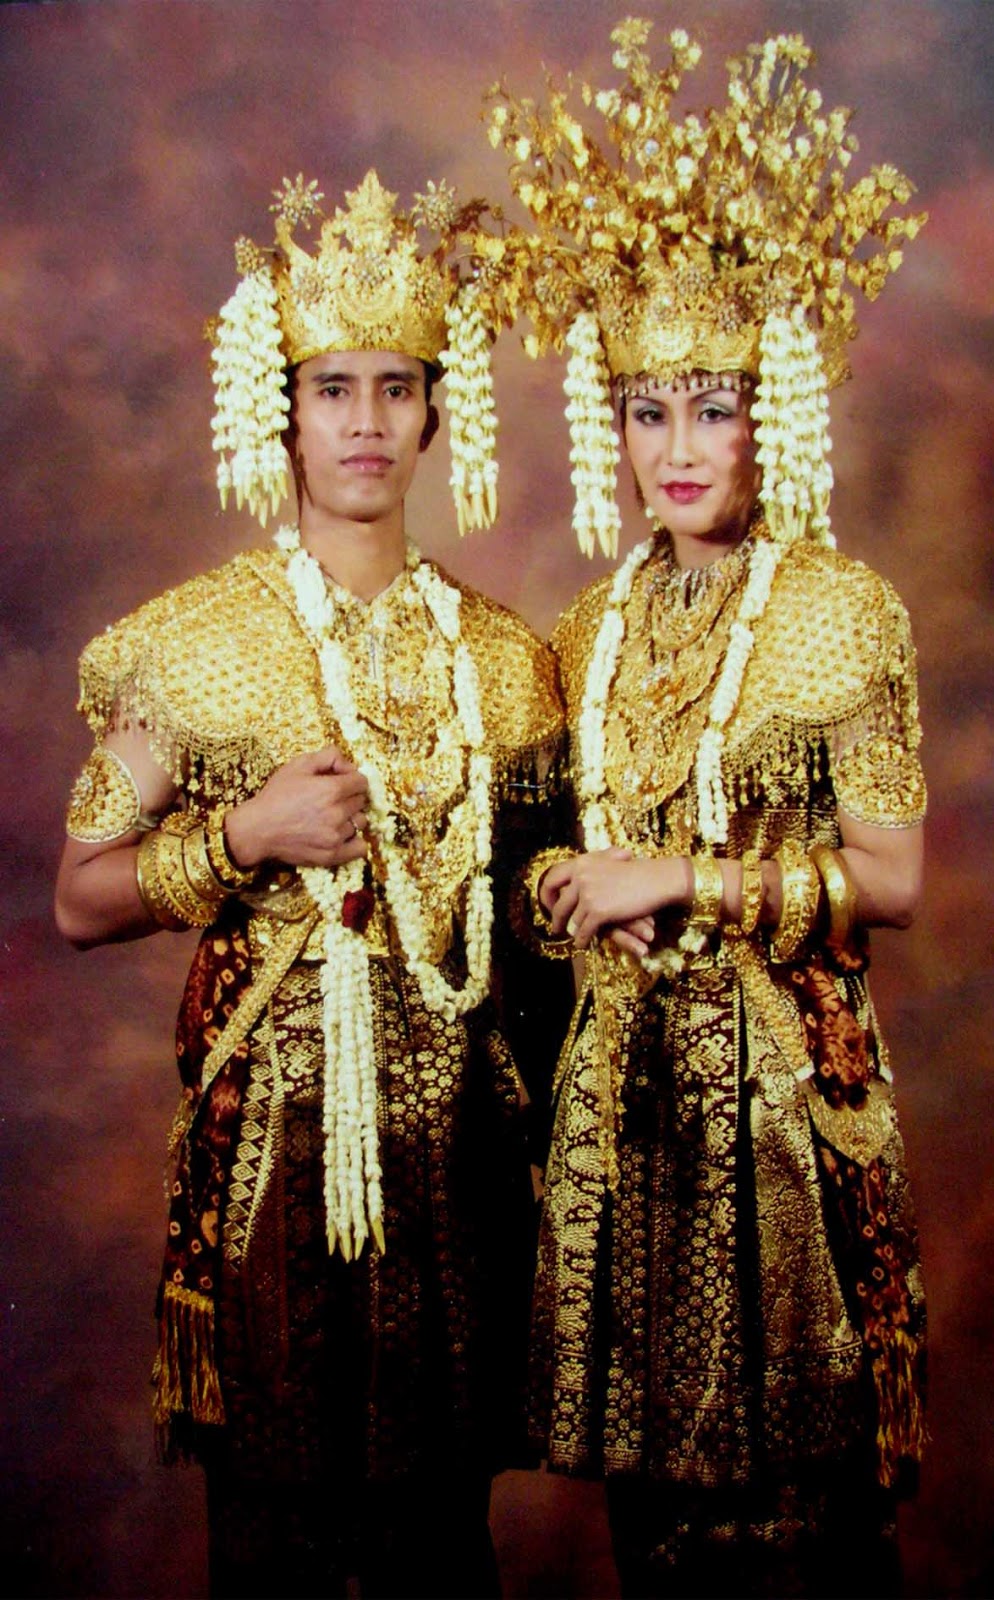 Download this Gambar Dan Nama Pakaian Adat Tradisional Dari Provinsi Indonesia picture